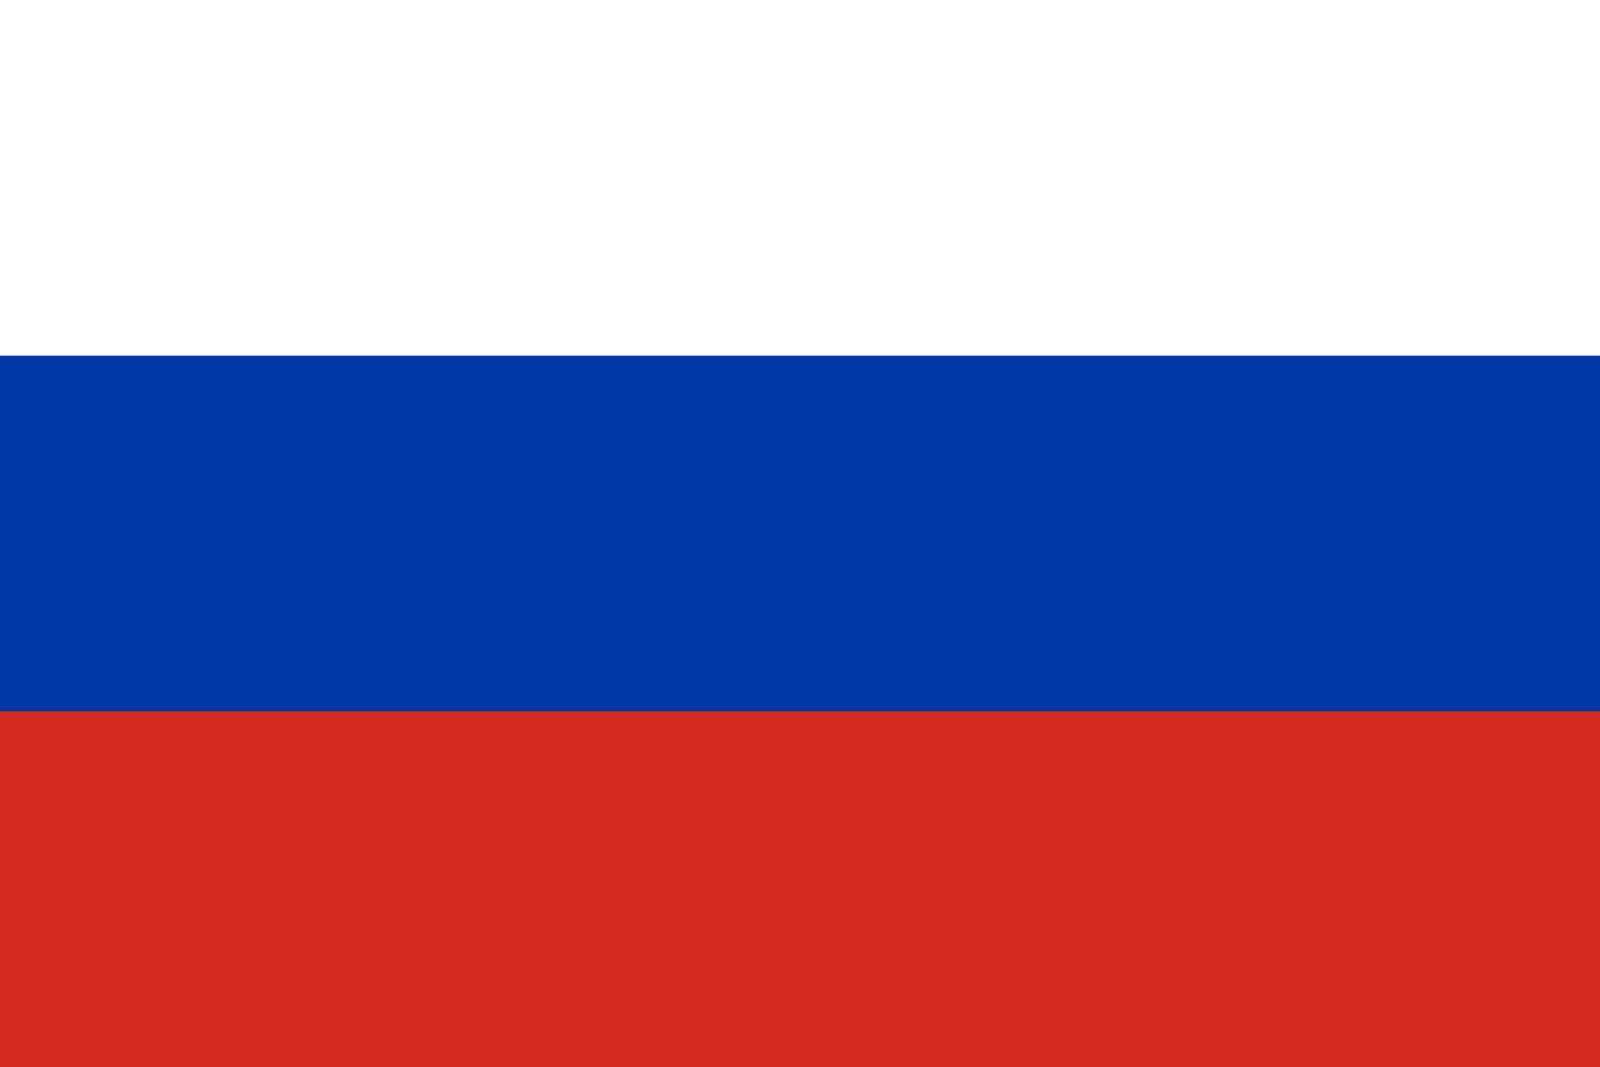 Bild der Staatsflagge Russland - mit einer Auflösung von 1600x1067 - Zentralasien